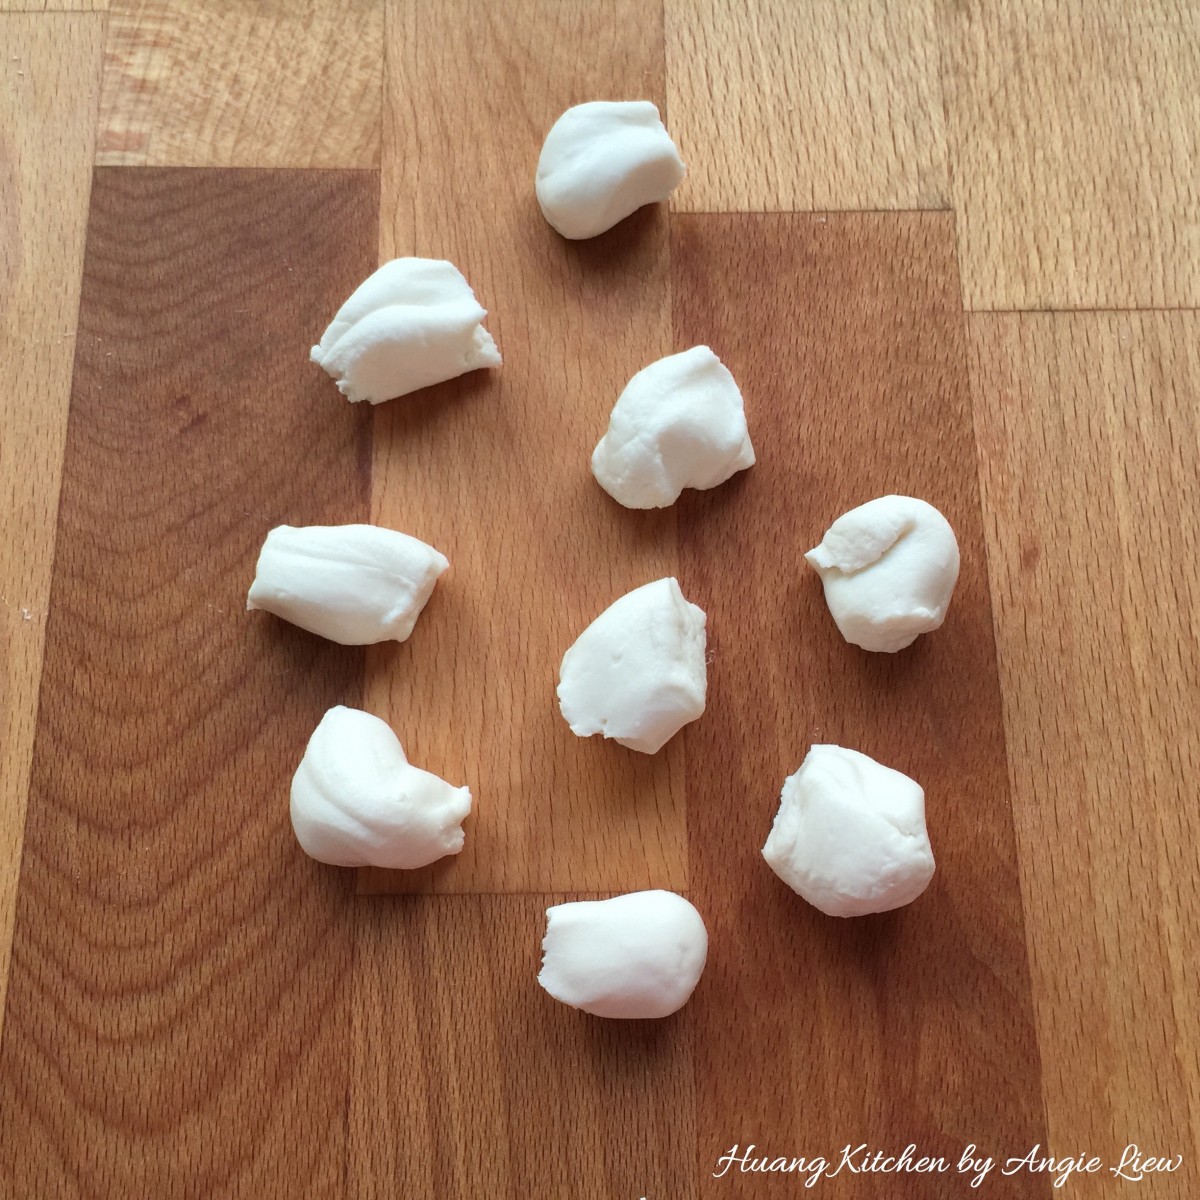 Sweet Glutinous Rice Balls Recipe (Tang Yuan) - pinch dough